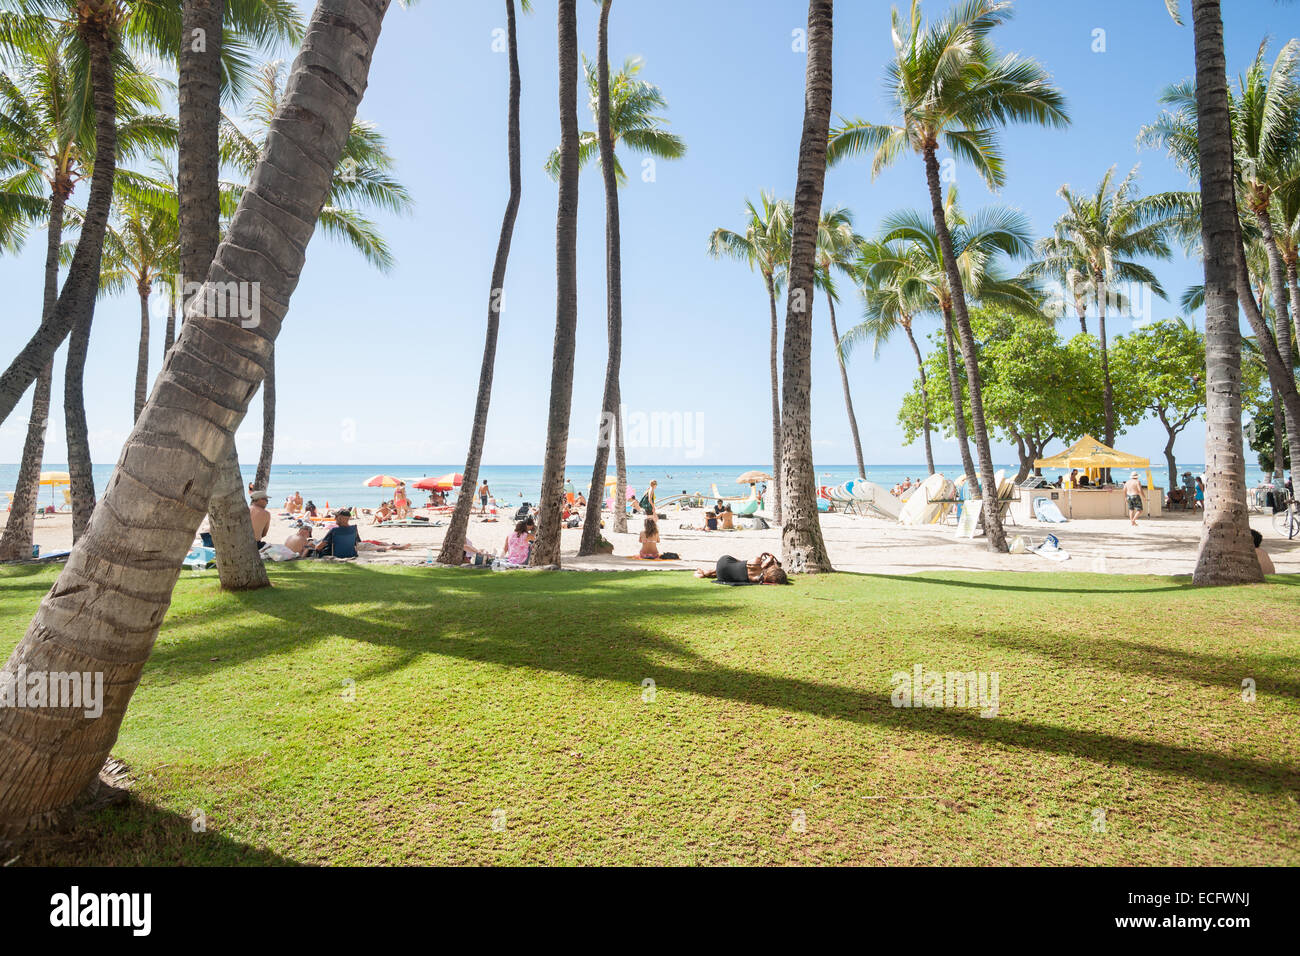 Plage d'occupation. La plage de Waikiki avec les amateurs de plages profiter du soleil en novembre 2014 Banque D'Images